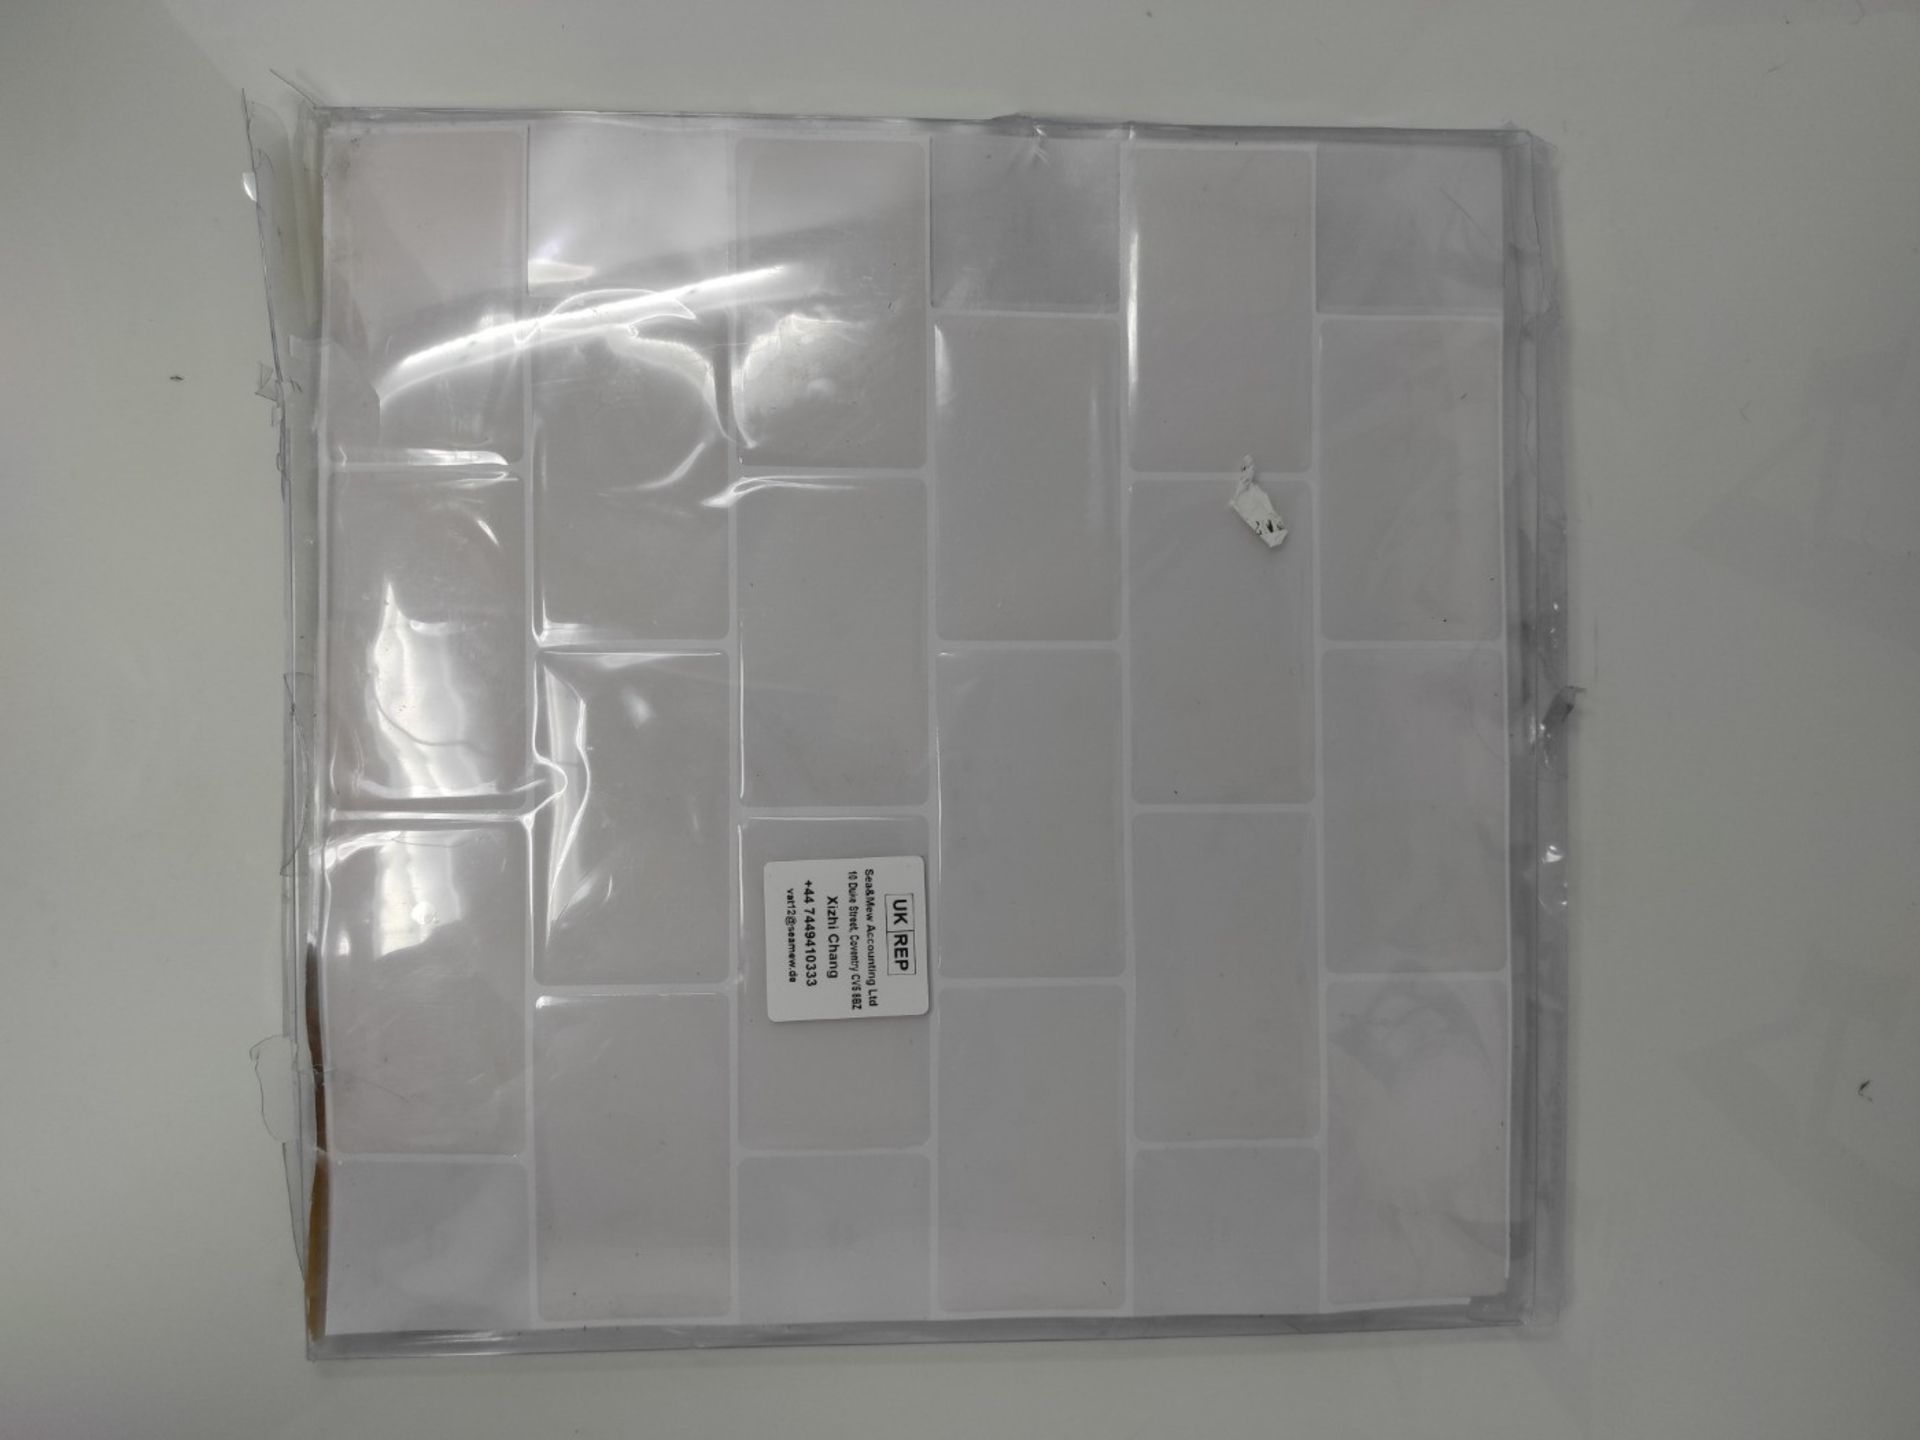 Art3d 10-Sheets Peel and Stick Tile Backsplash - 12"x12" Premium Kitchen Backsplash Pe